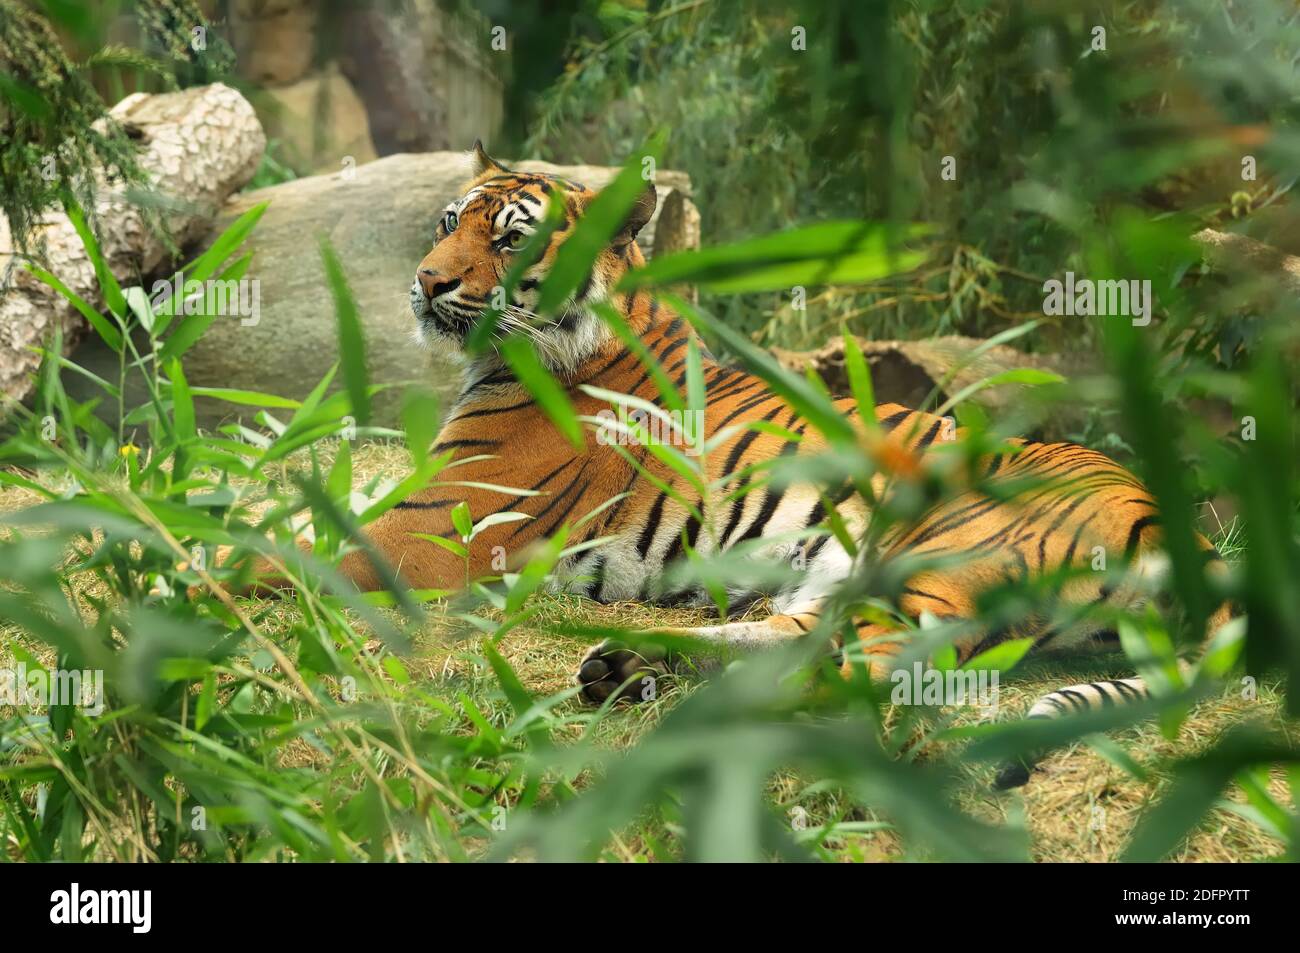 Grande gatto, la tigre di Sumatran è la popolazione di Panthera tigris fondaica nell'isola indonesiana di Sumatra, elencata come criticamente minacciata sul rosso IUCN Foto Stock